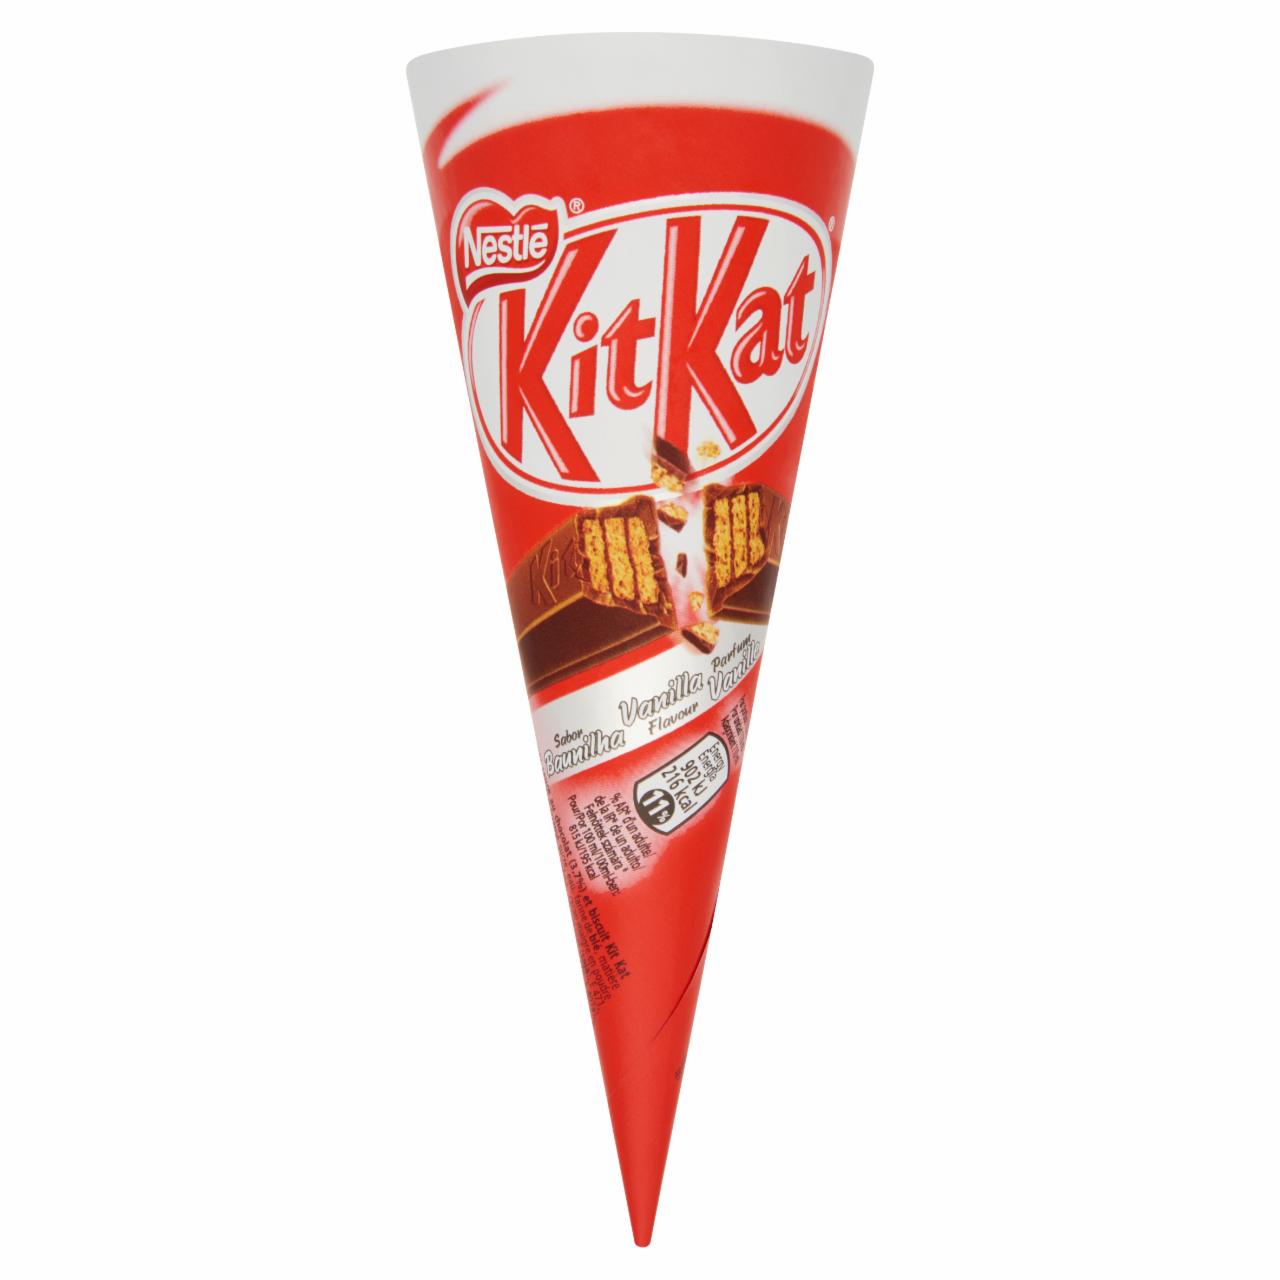 Képek - Nestlé KitKat vaníliás és csokoládés jégkrém csokoládéízű öntettel közepén KitKat szelettel 110 ml